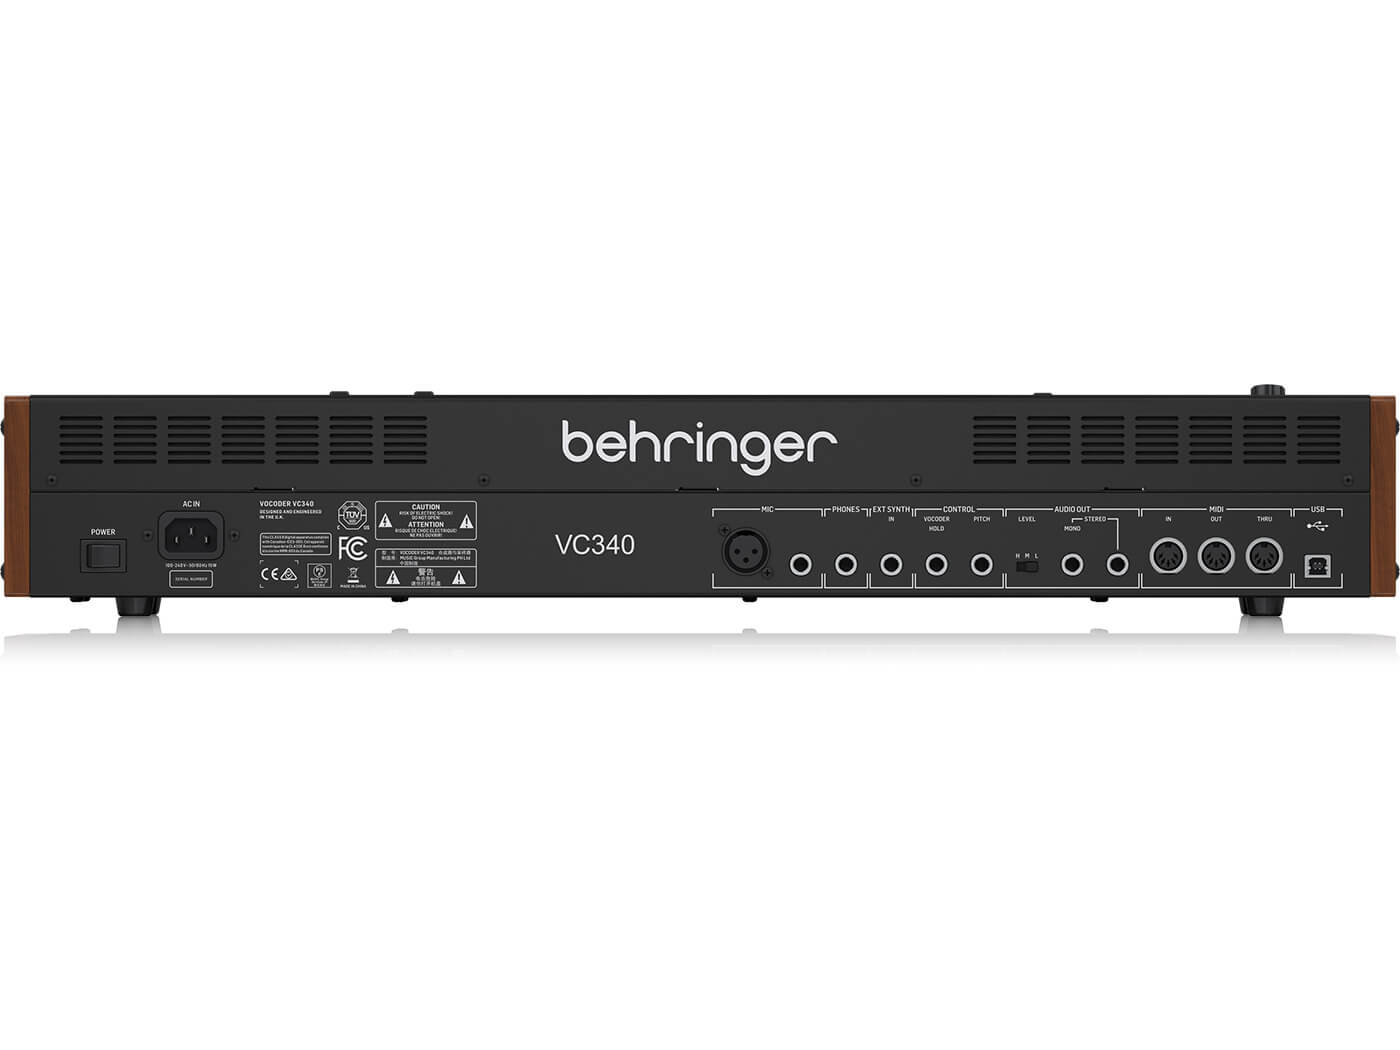 Behringer VC340 Vocoder